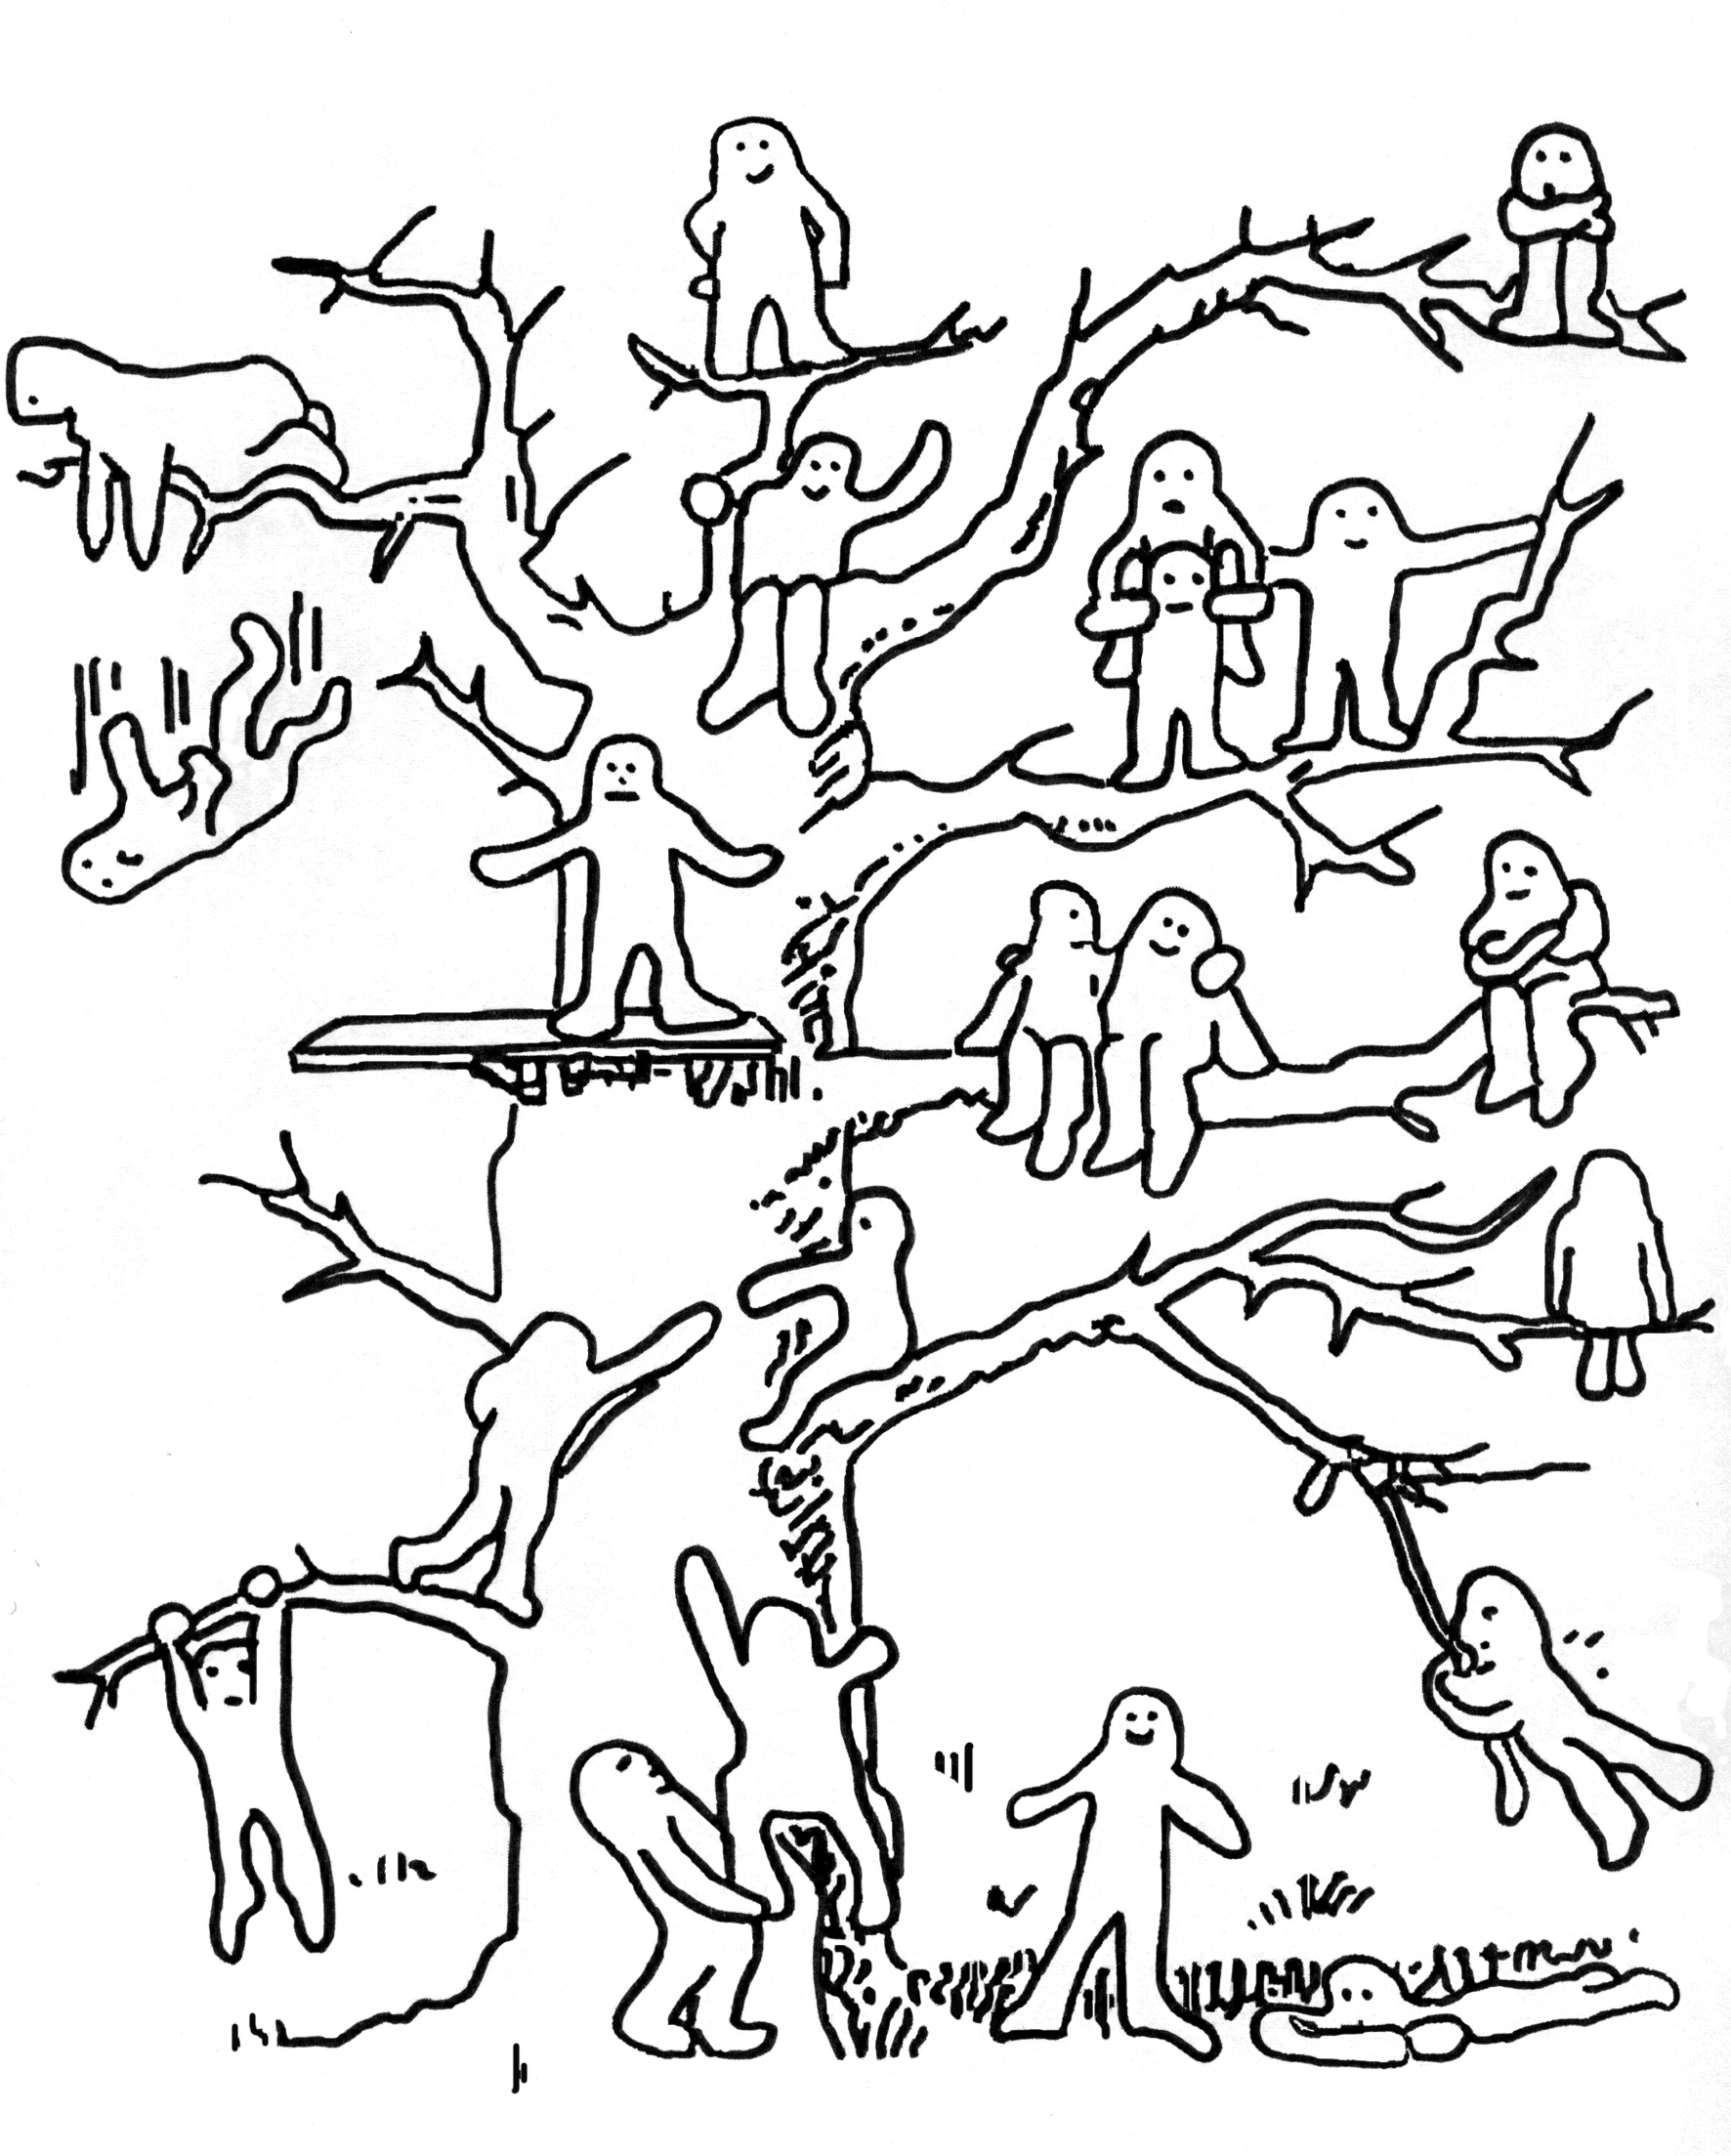 «Дерево с человечками» (д. Лампен, адаптация л.п. Пономаренко).